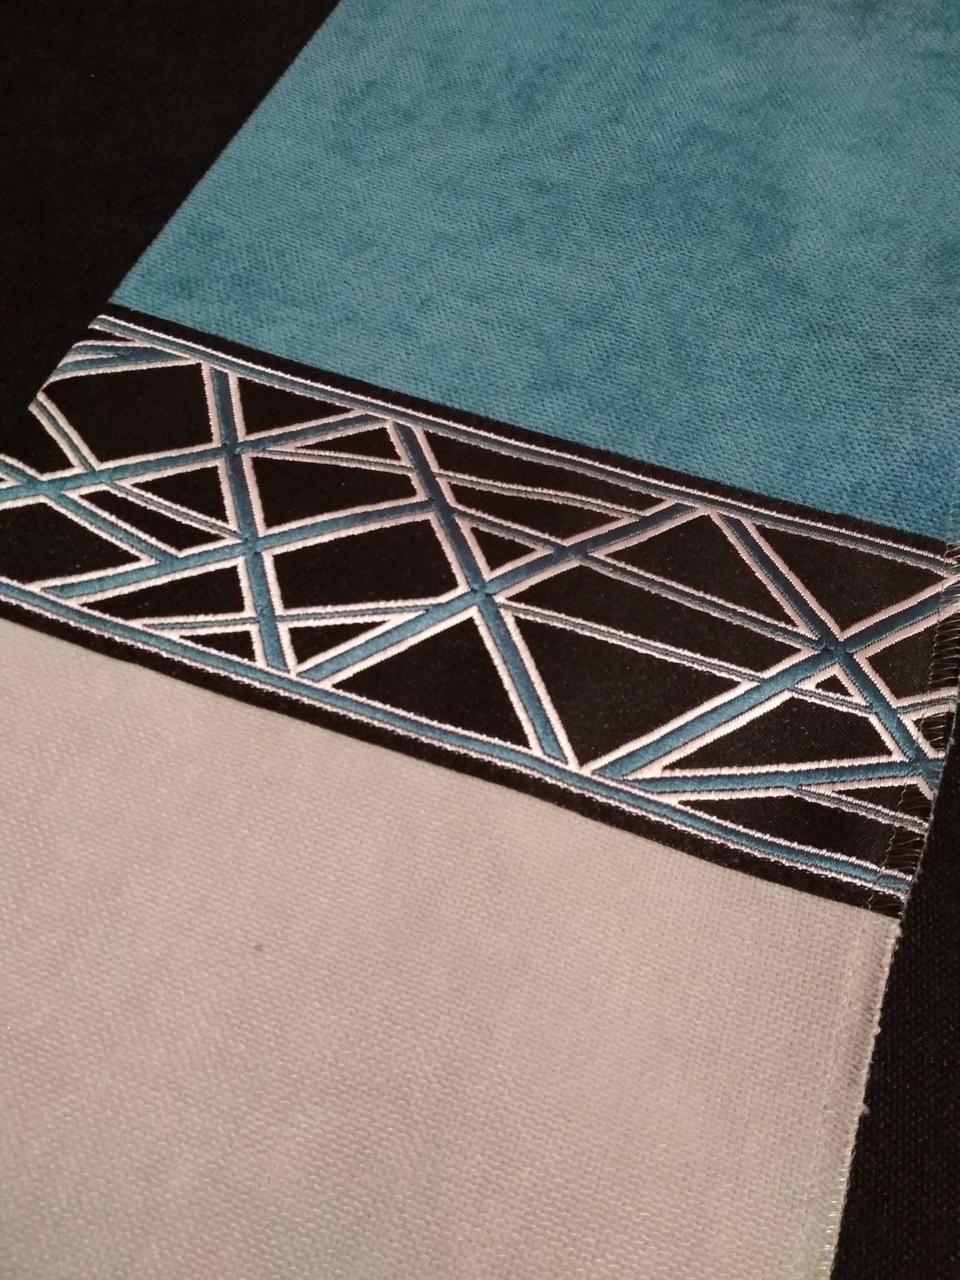 Декоративний бордюр Sky для текстильних виробів - штори, тюль, подушки, покривала. Ширина 7см